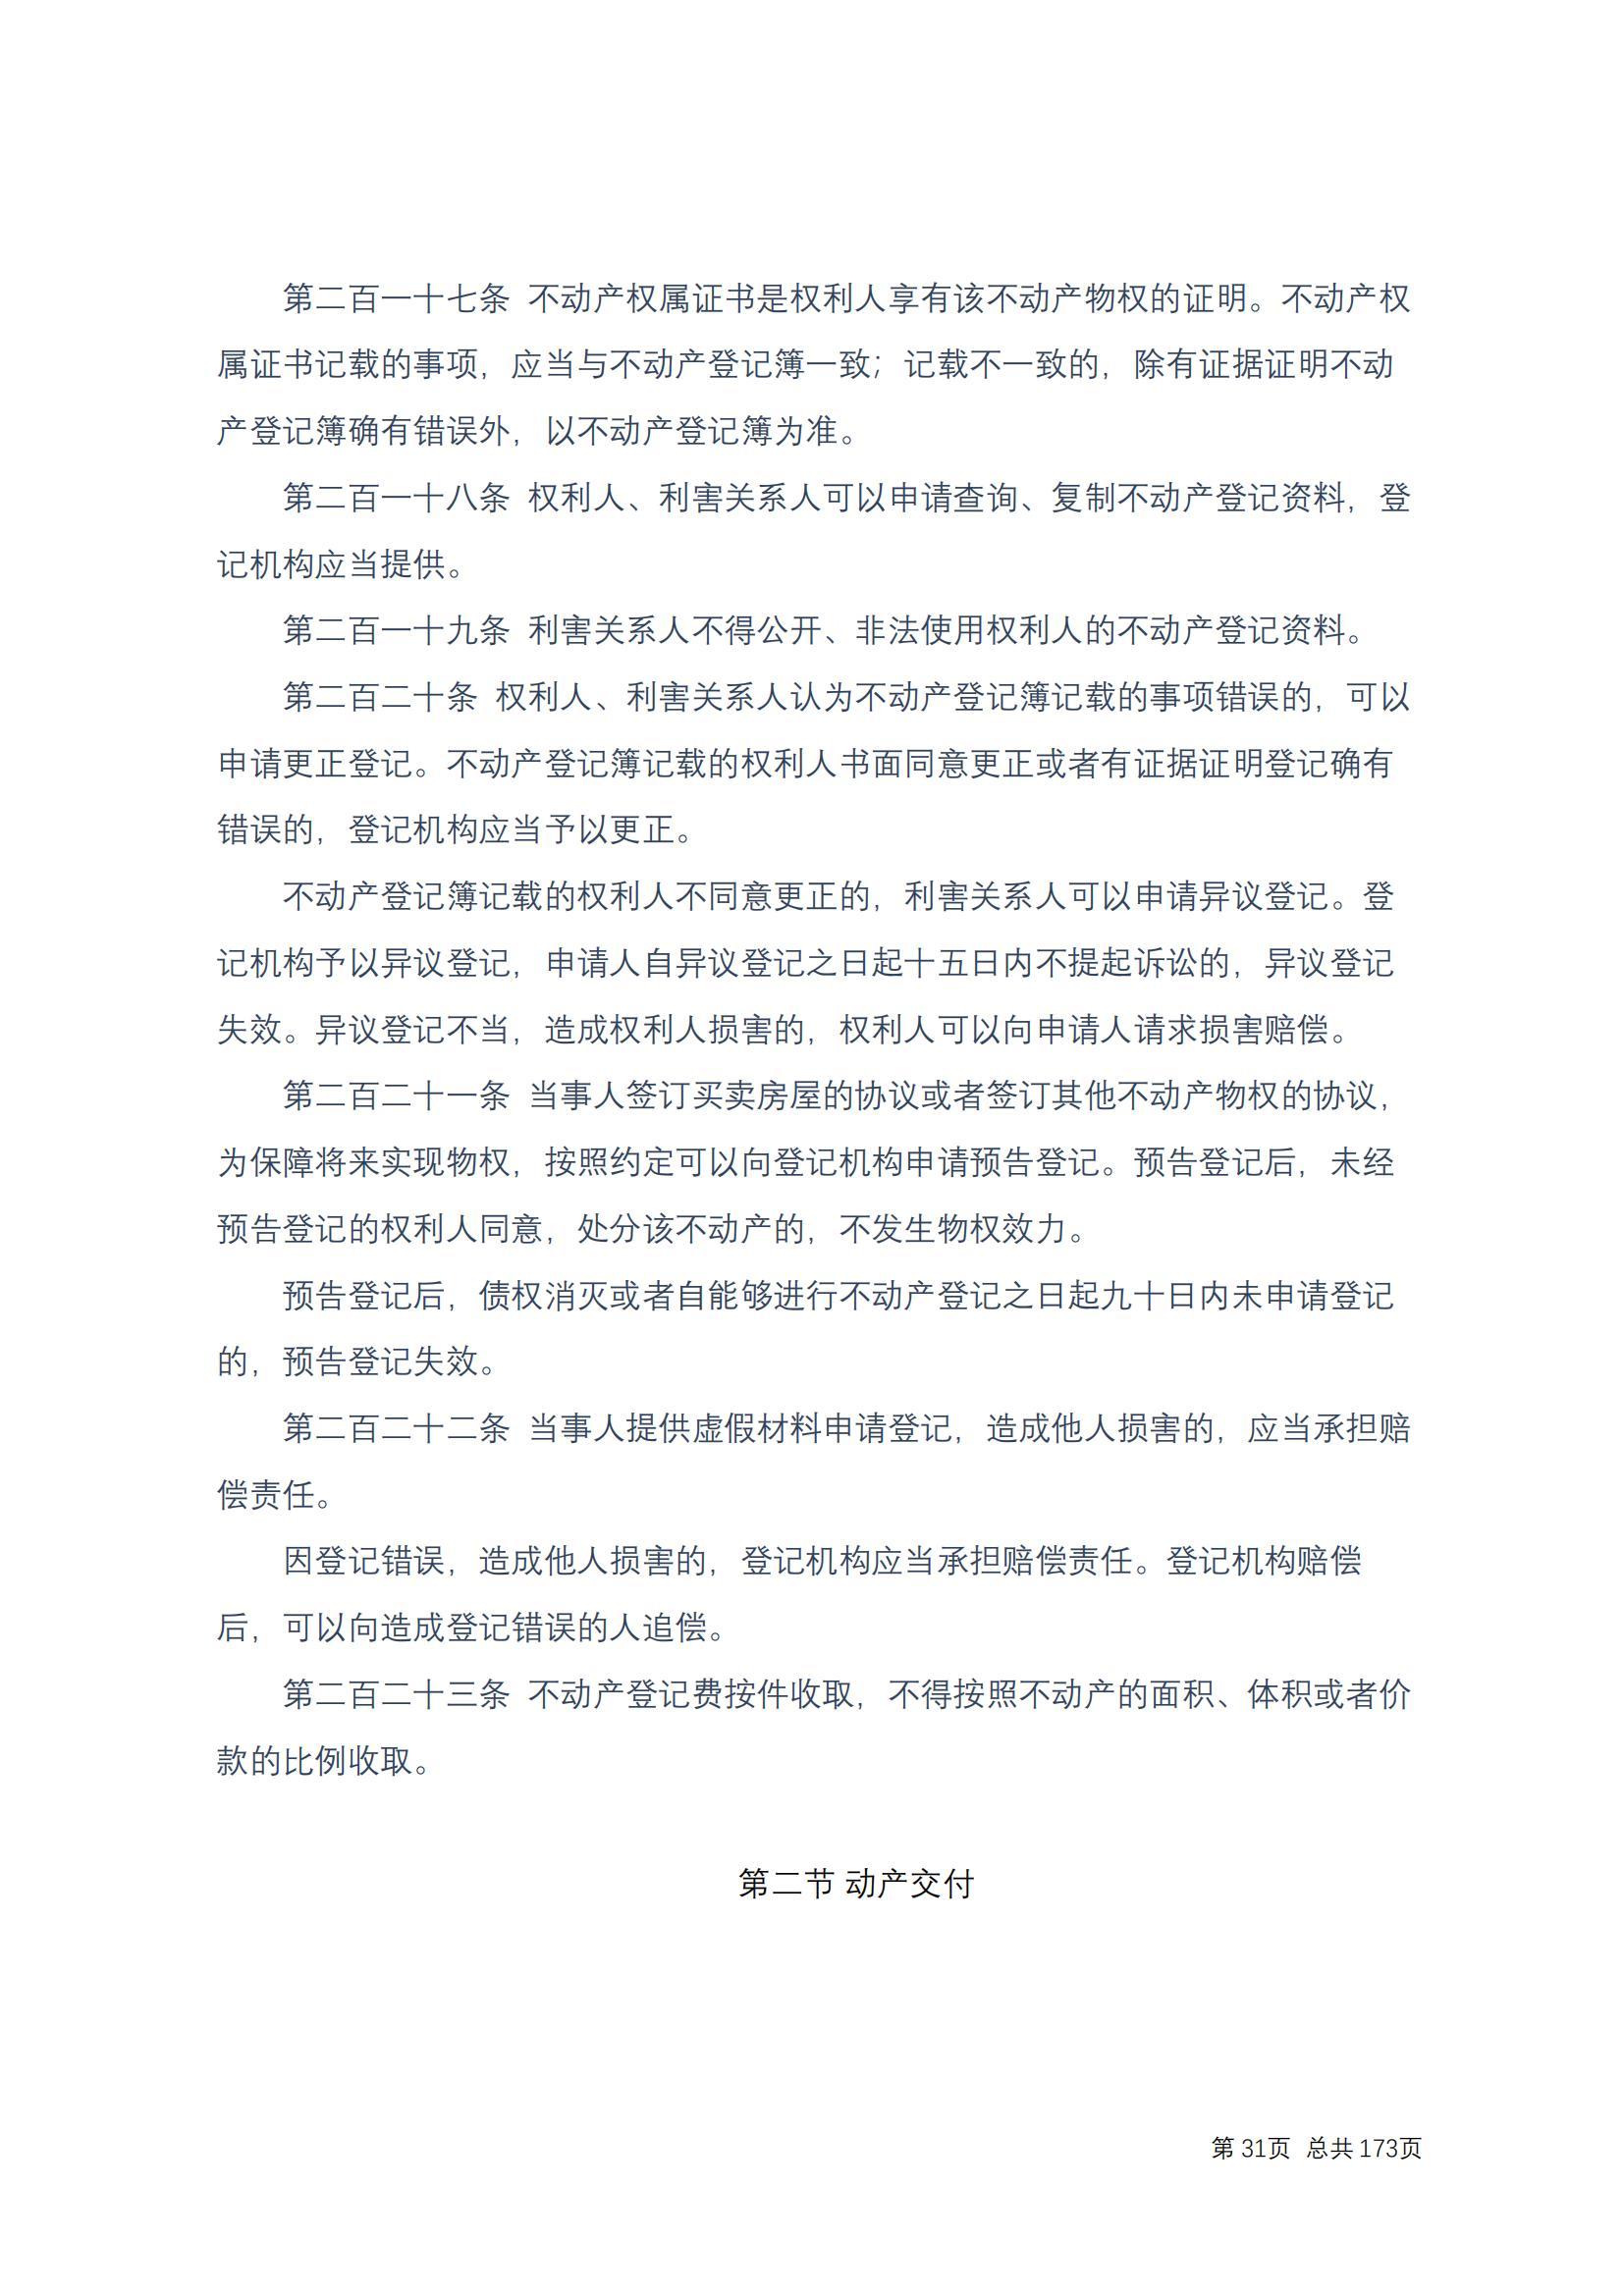 中华人民共和国民法典 修改过_30